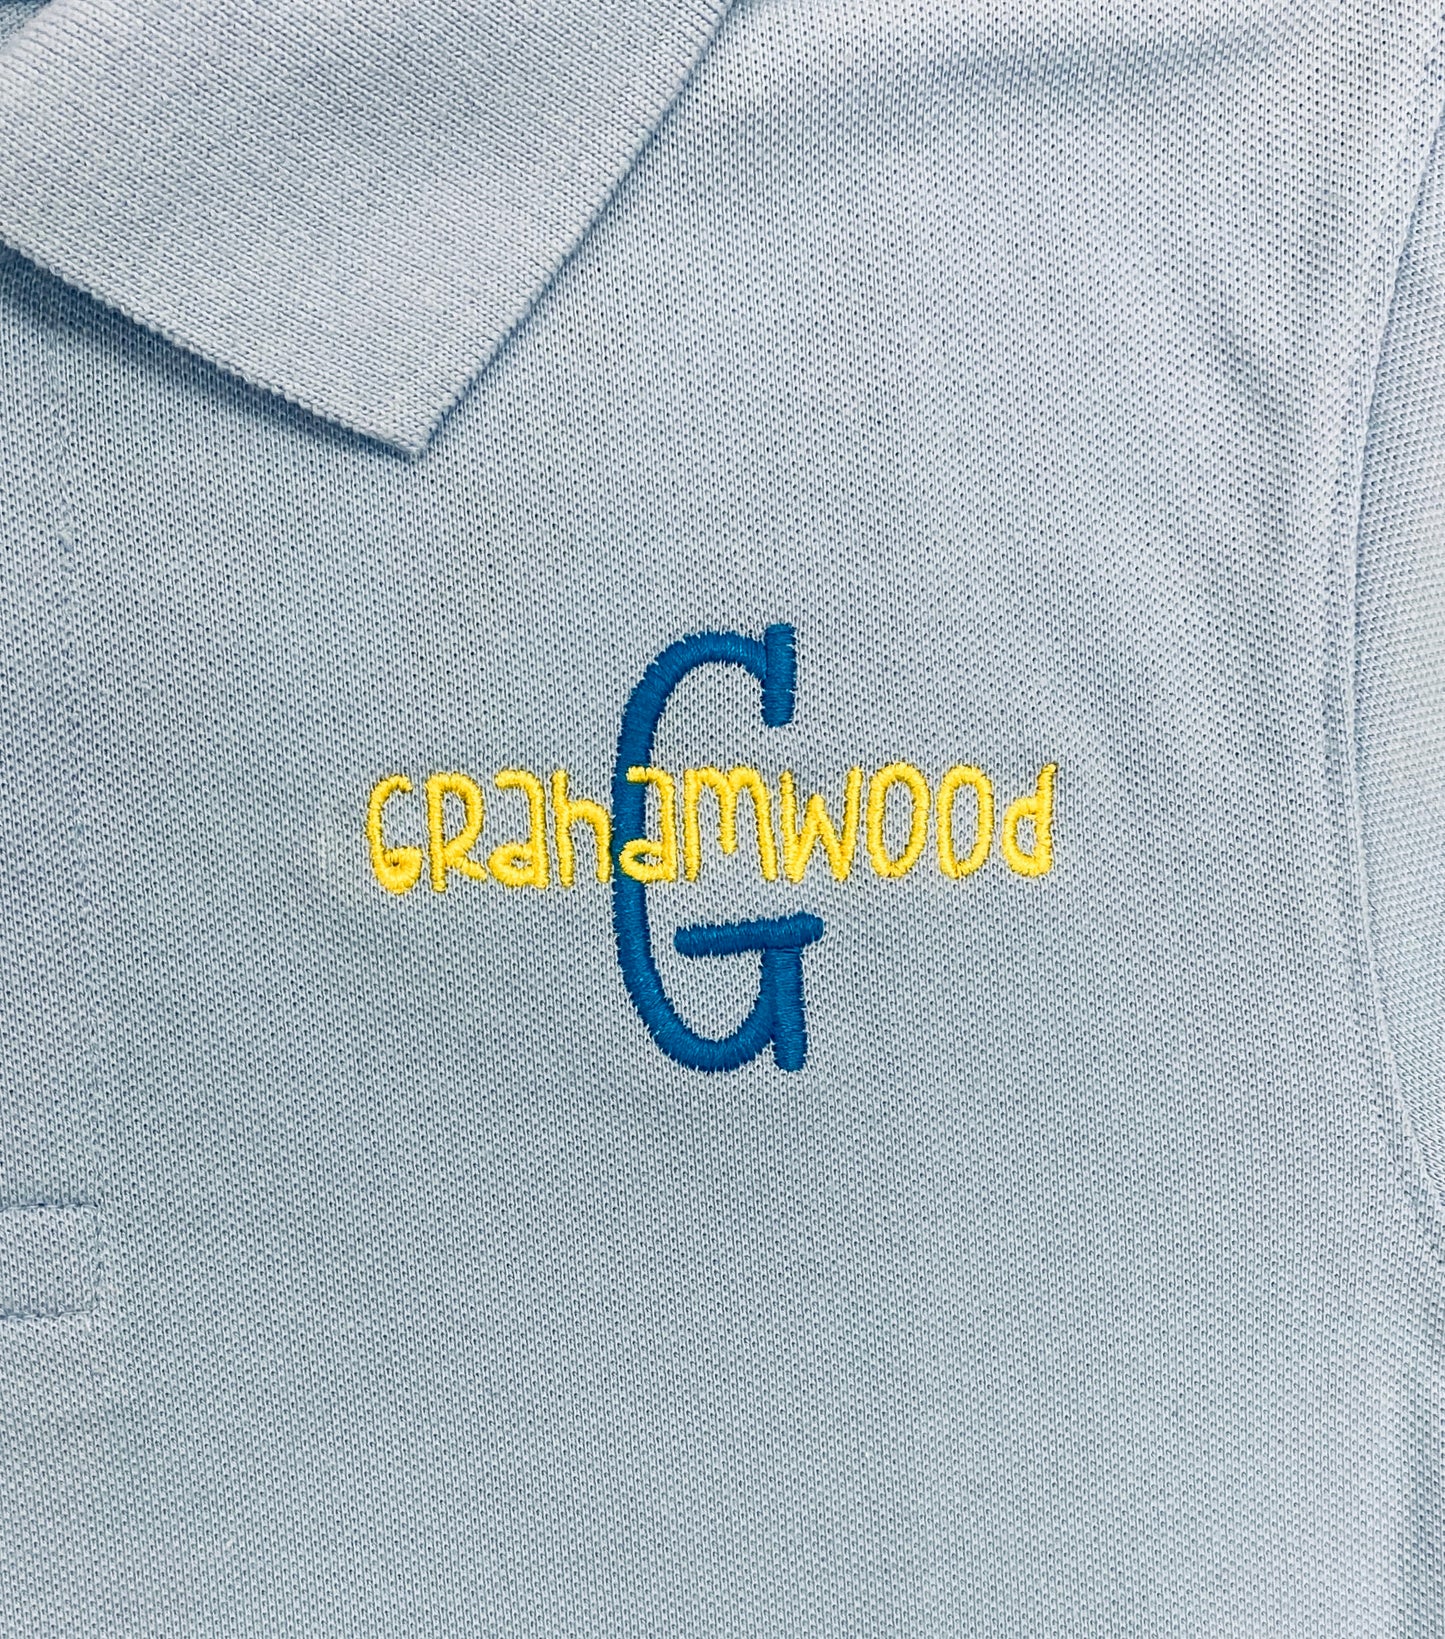 Grahamwood Polo